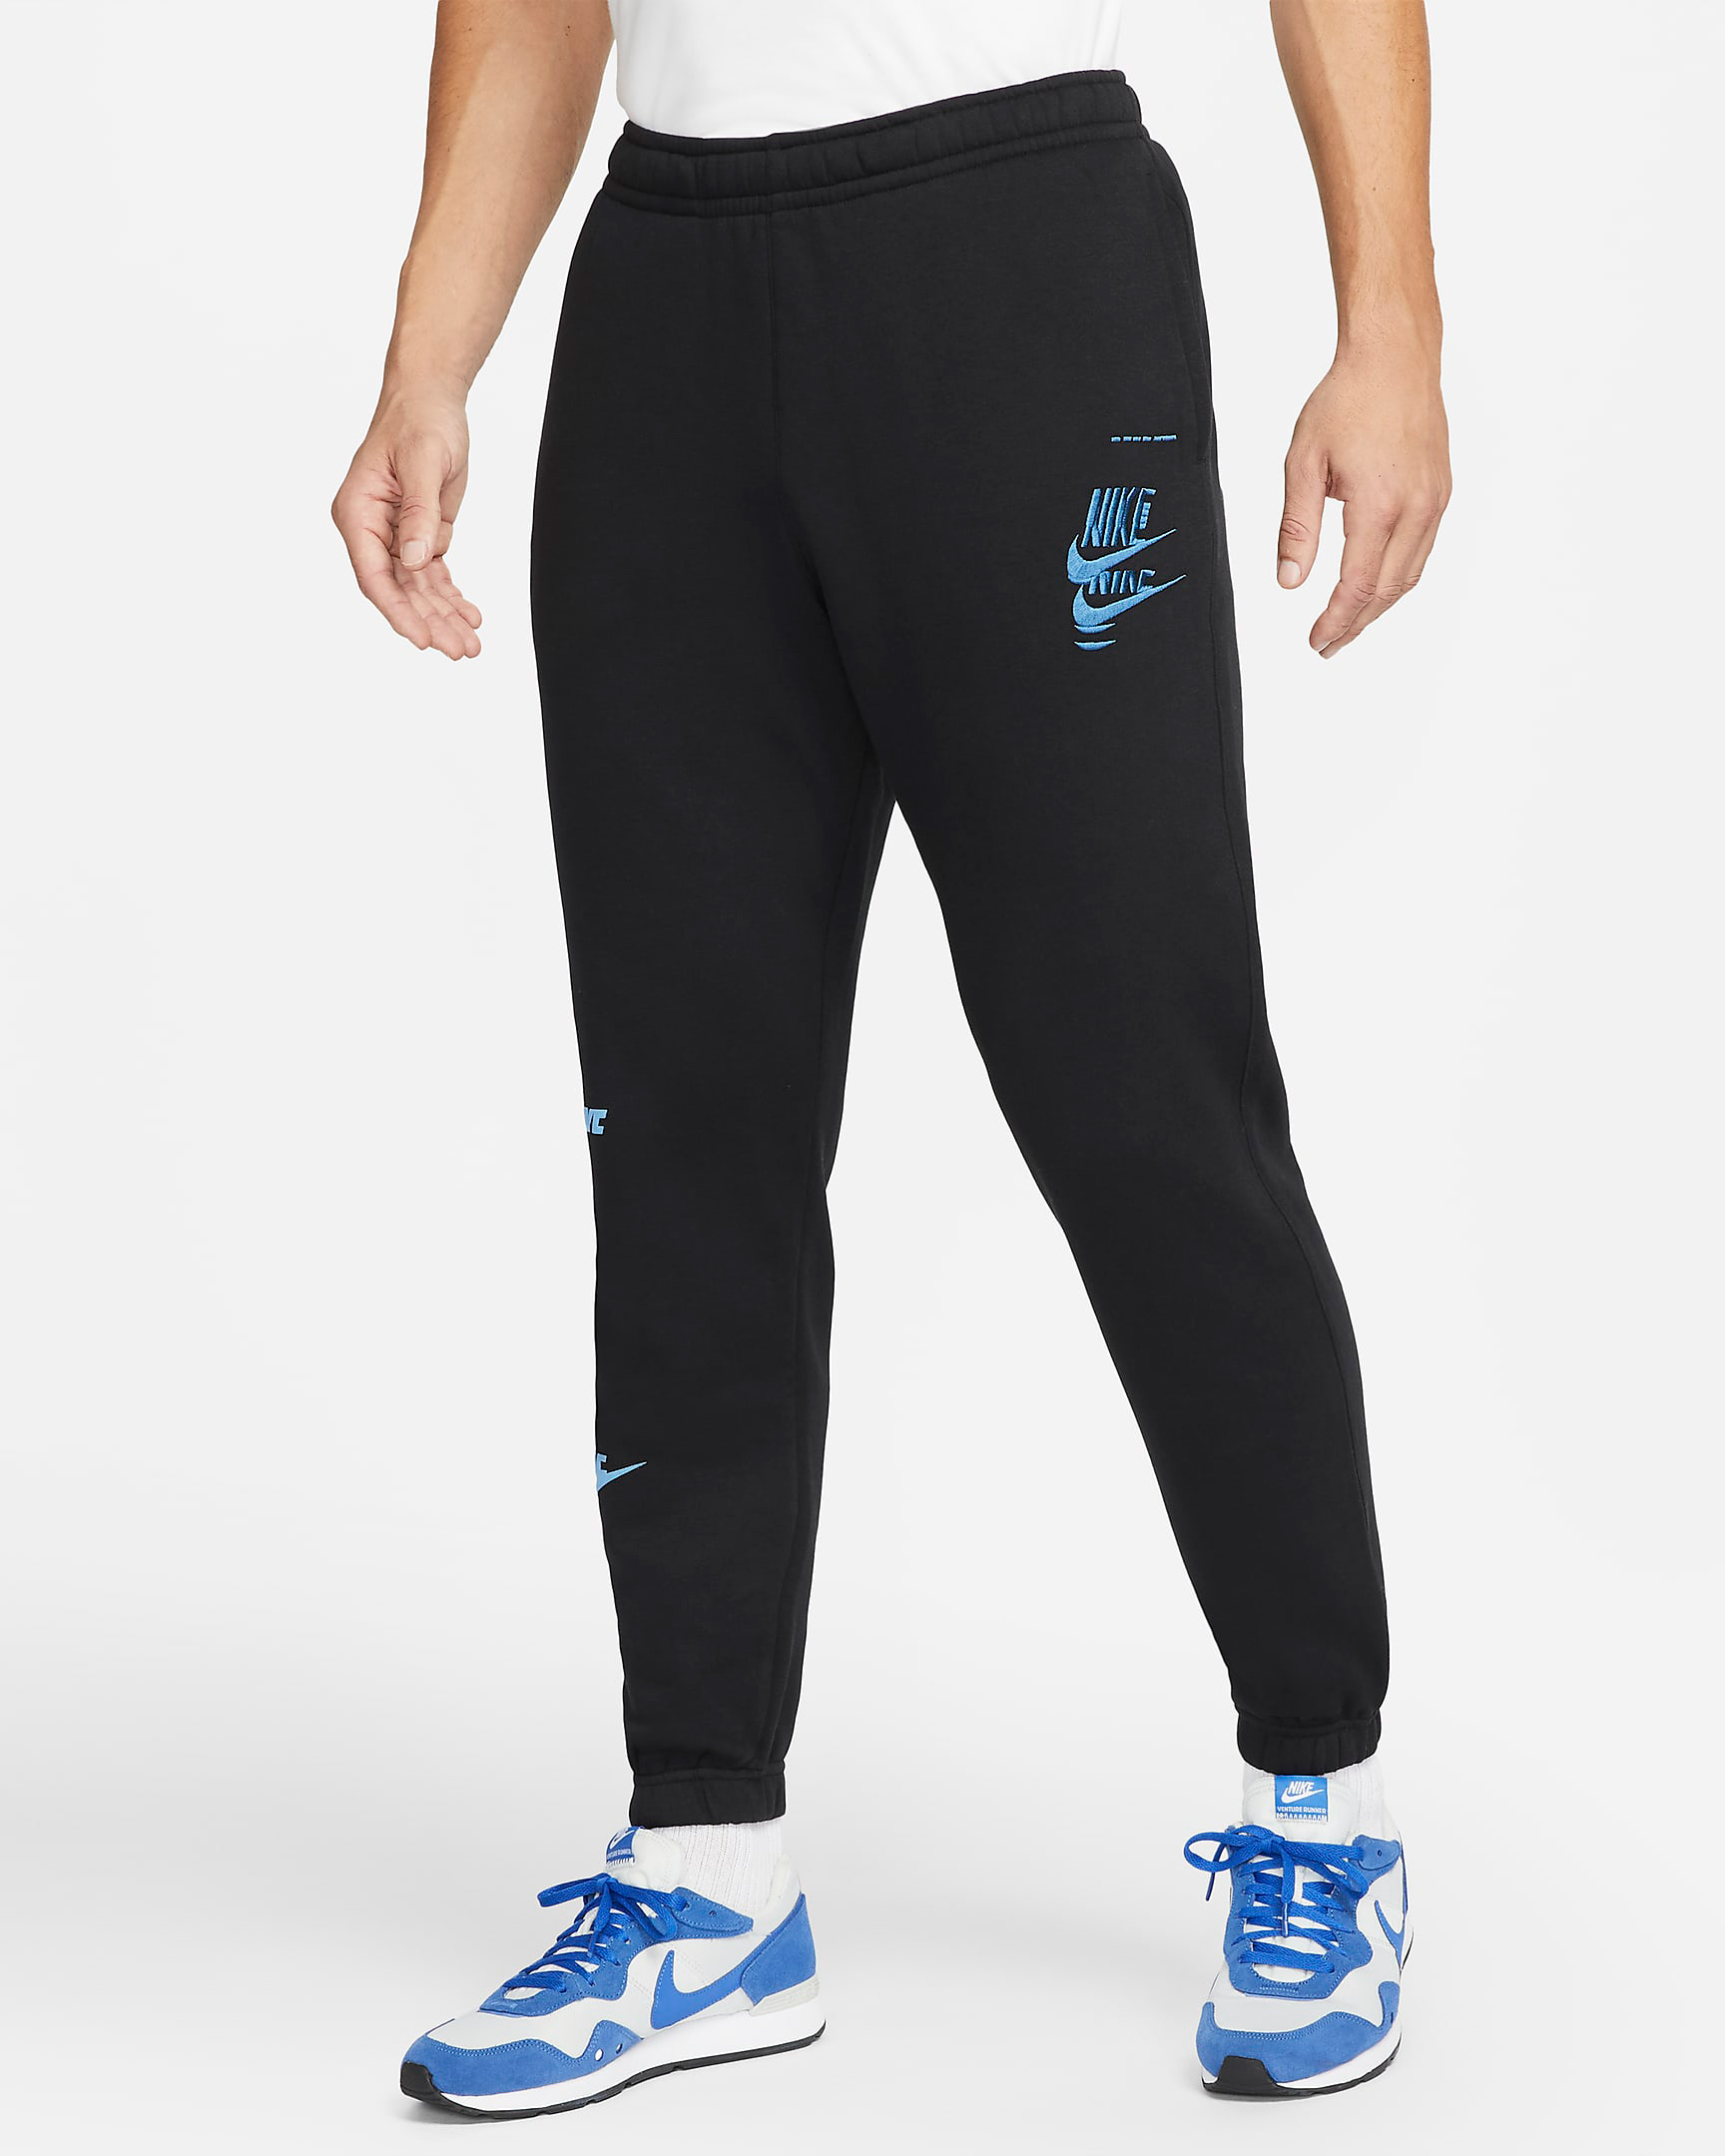 nike-sportswear-sport-essentials-mens-fleece-pants-black-blue-1